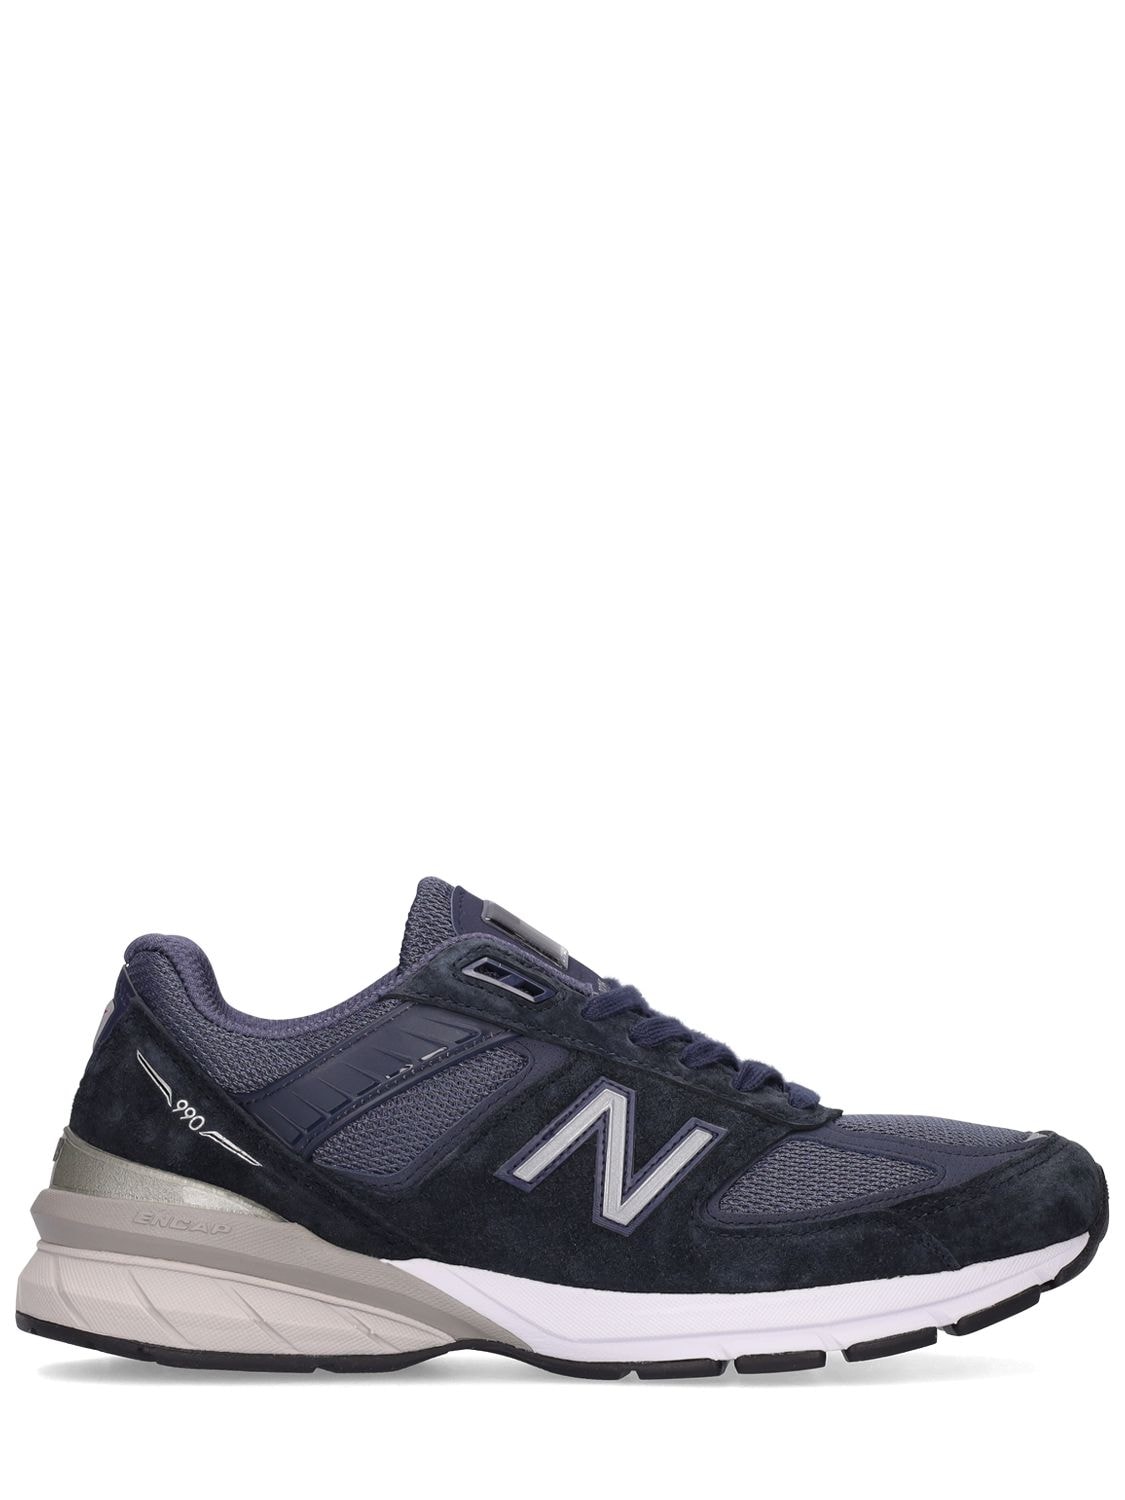 New Balance - 990 sneakers - Navy | Luisaviaroma